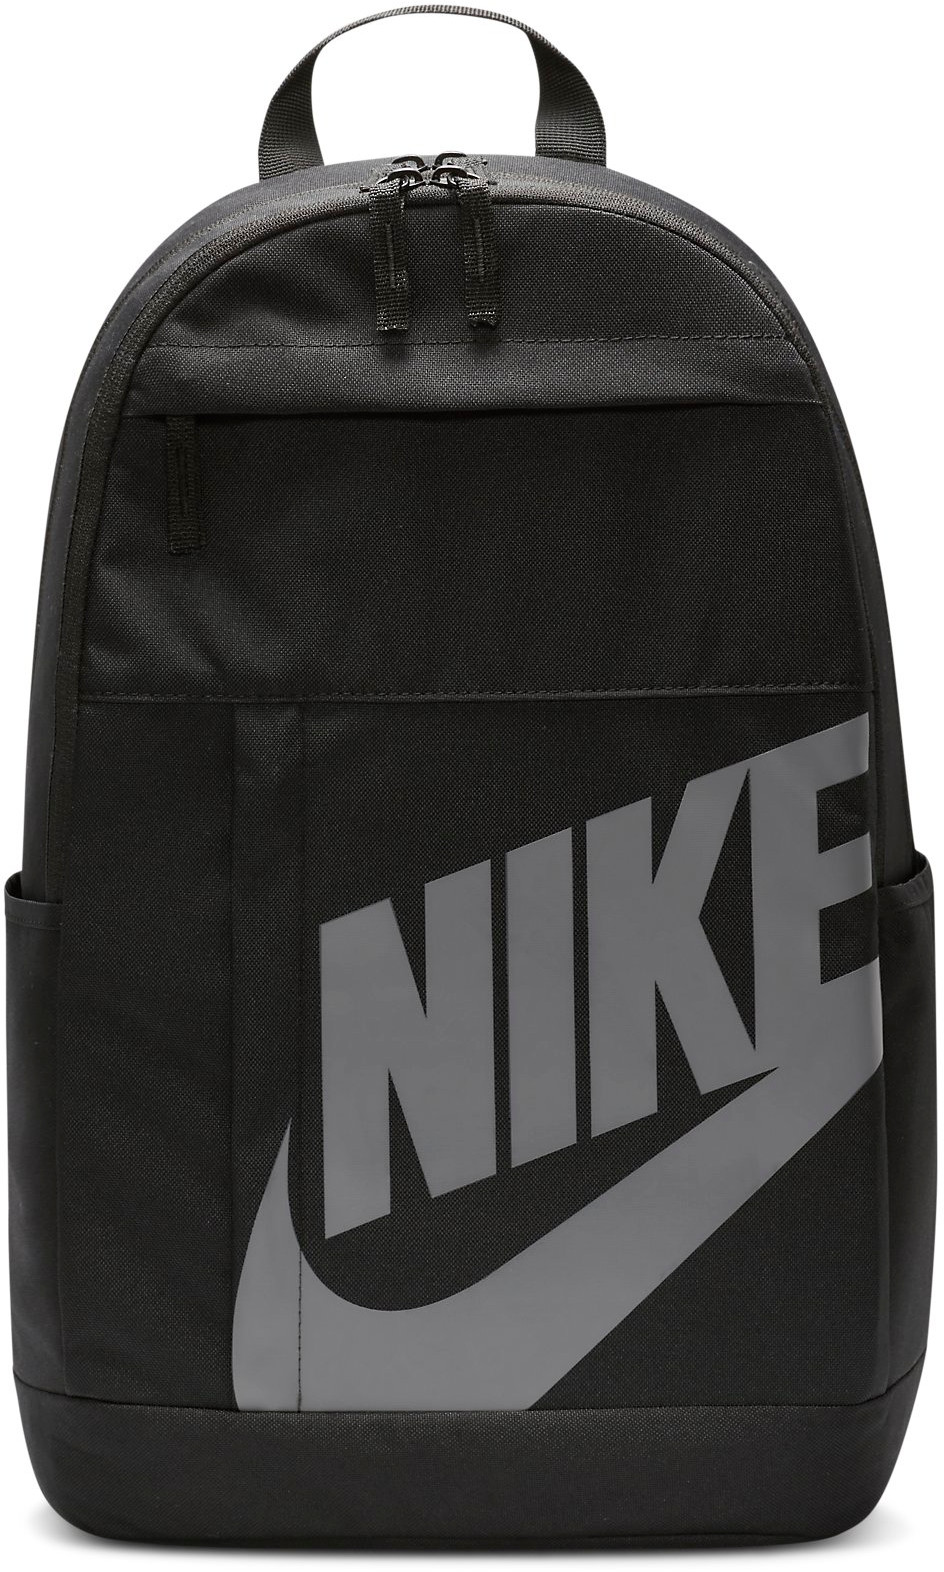 Backpack Nike NK ELMNTL BKPK - HBR